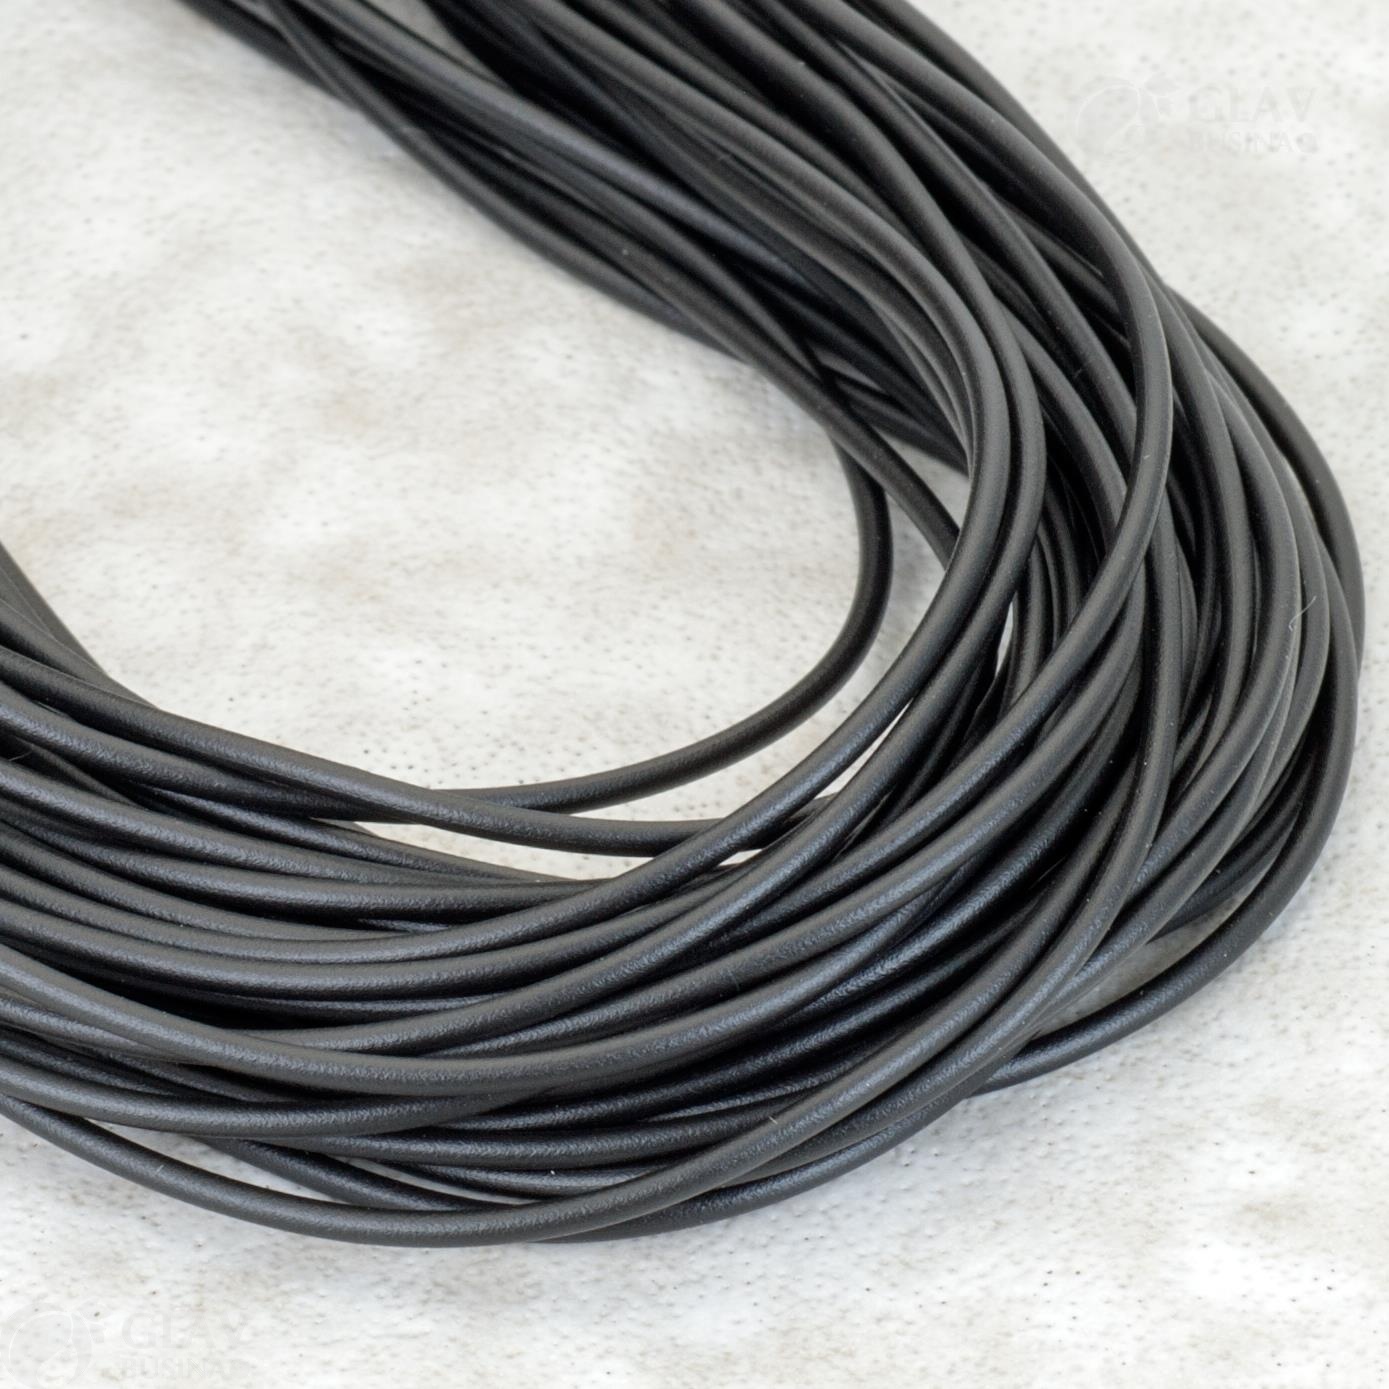 Матовый каучуковый шнур толщиной 1.5 мм для изготовления колье и браслетов, срок службы до 2 лет, избегать света для сохранности.